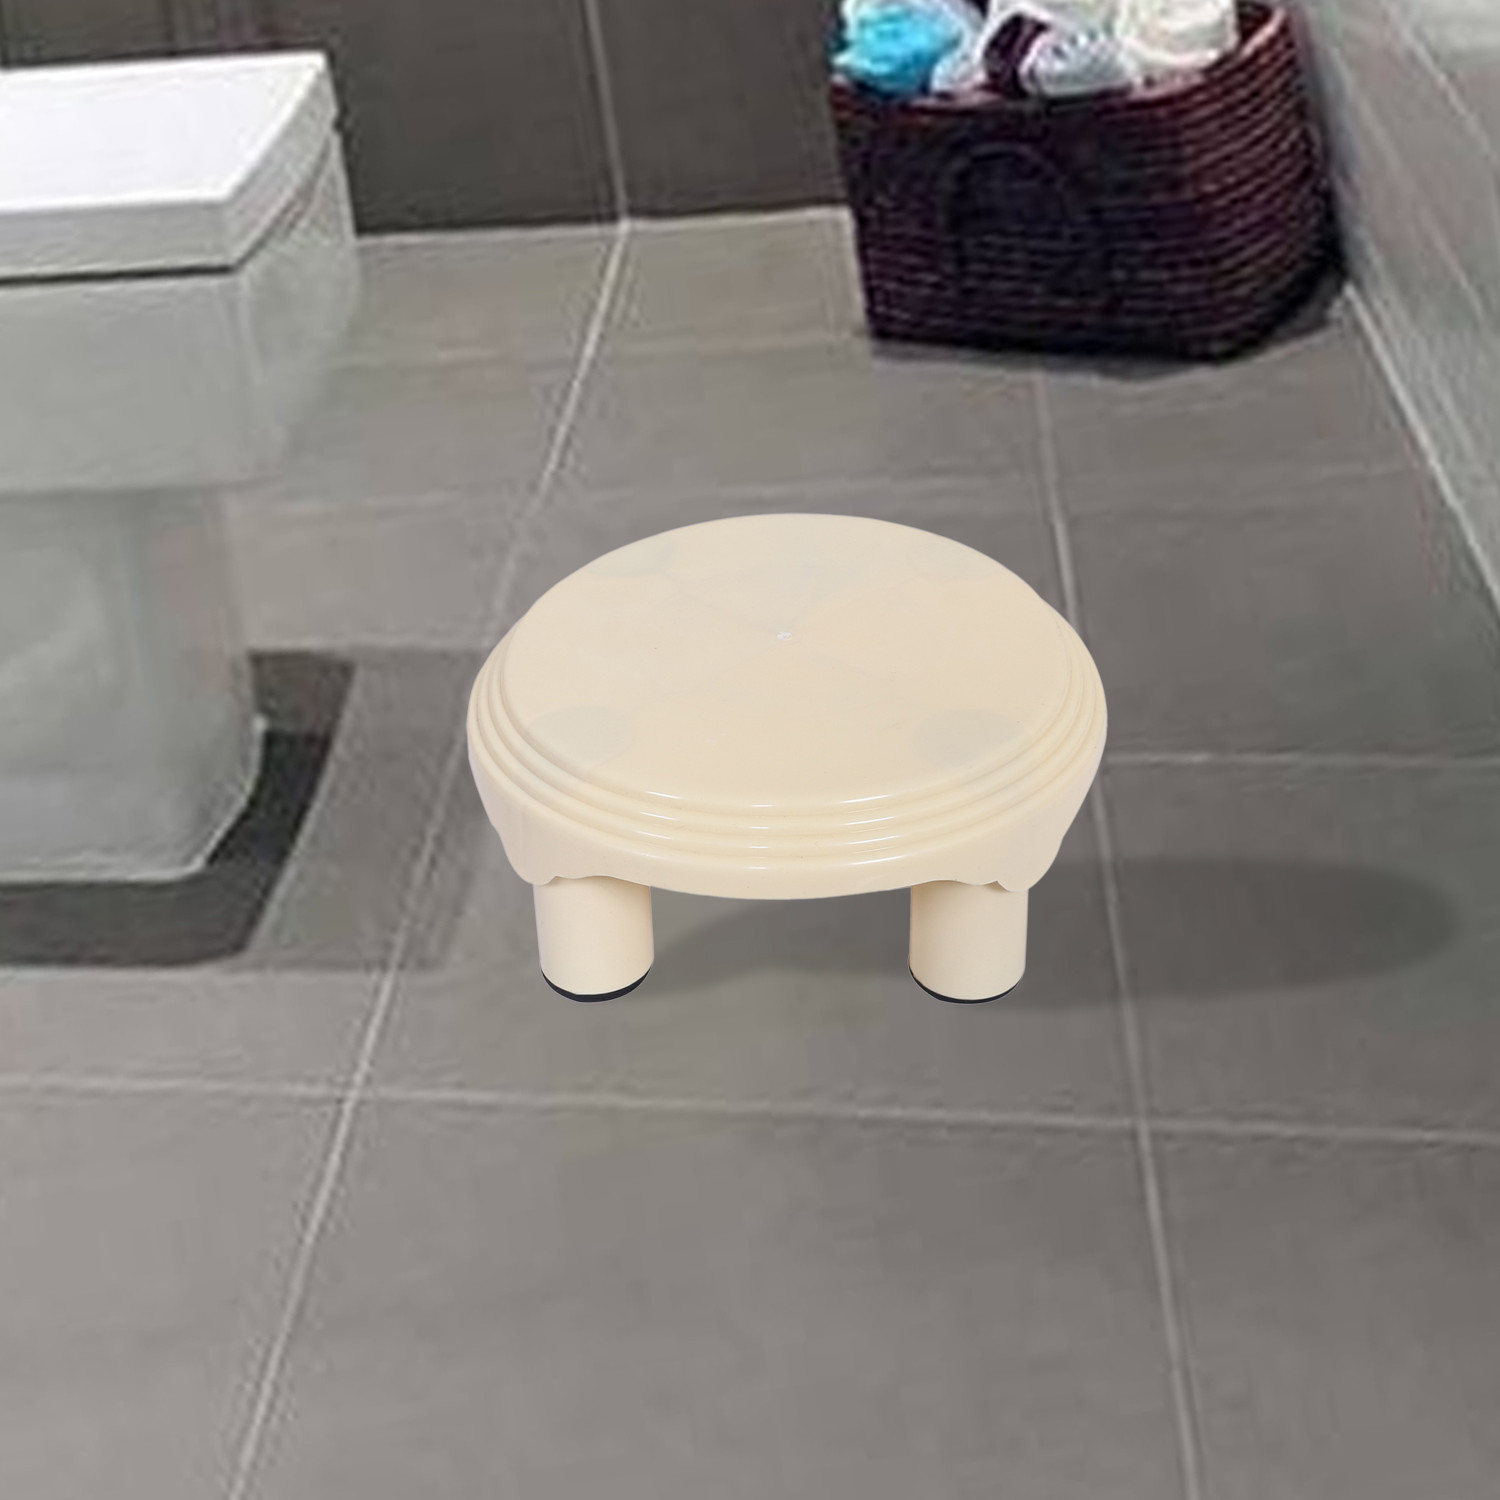 Kuber Industries Bathroom Stool|Plastic Stool|Anti-slip Bathing Stool|Stool for Senior Citizen|Patla for Bathroom|Pack of 2 (Pink & Cream)